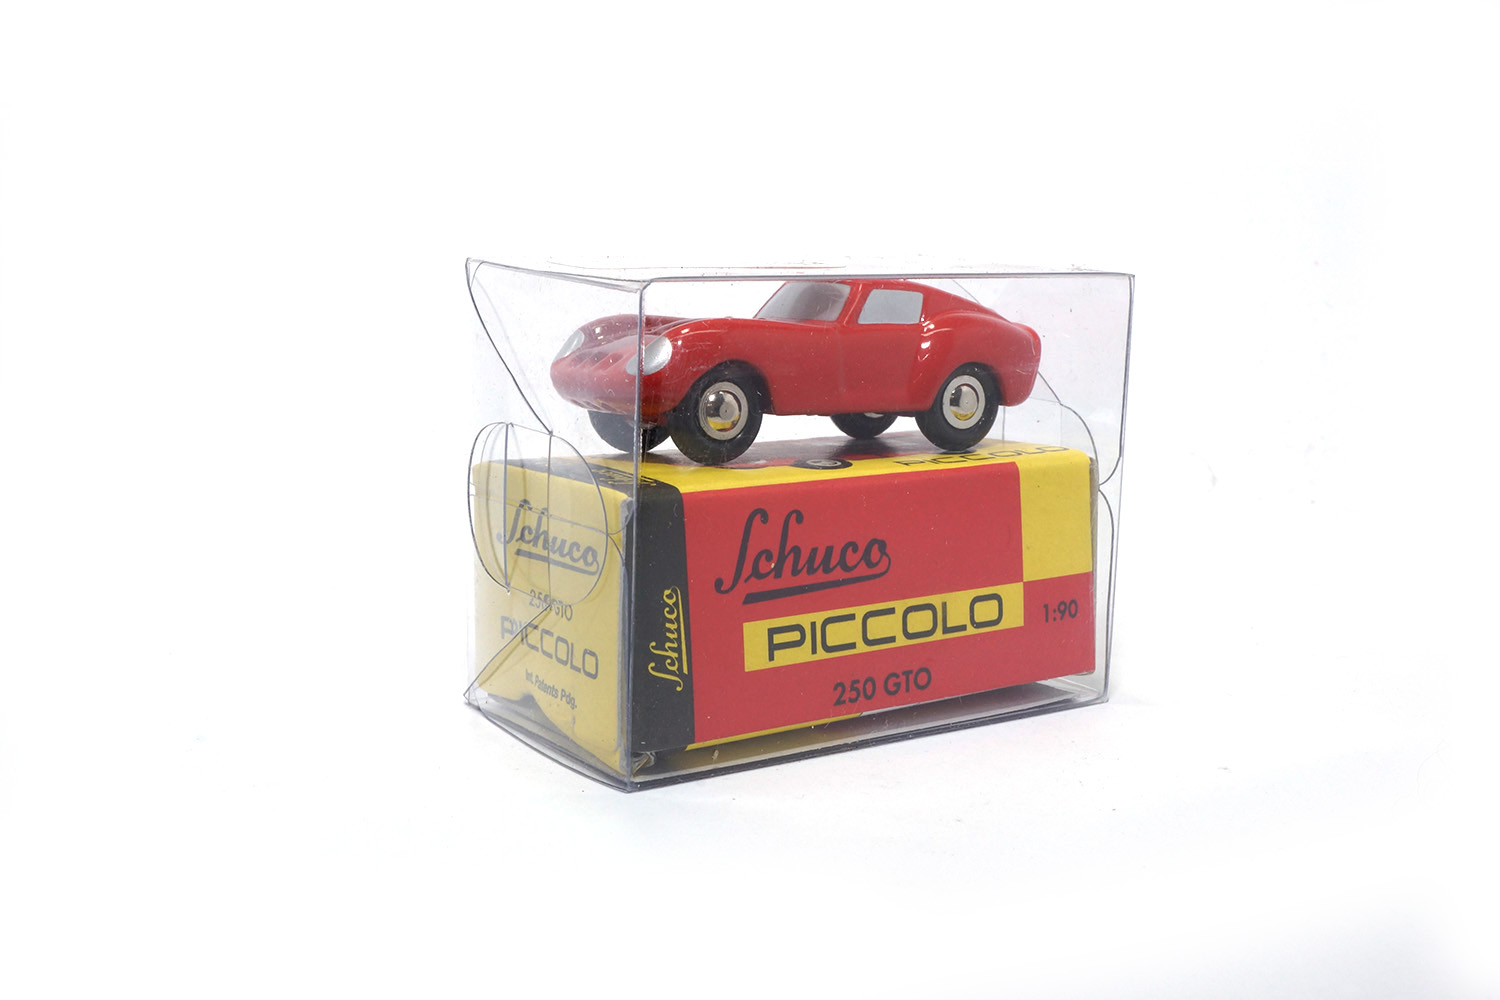 Schuco 05081 Ferrari 250 GTO 1:90 (Piccolo)